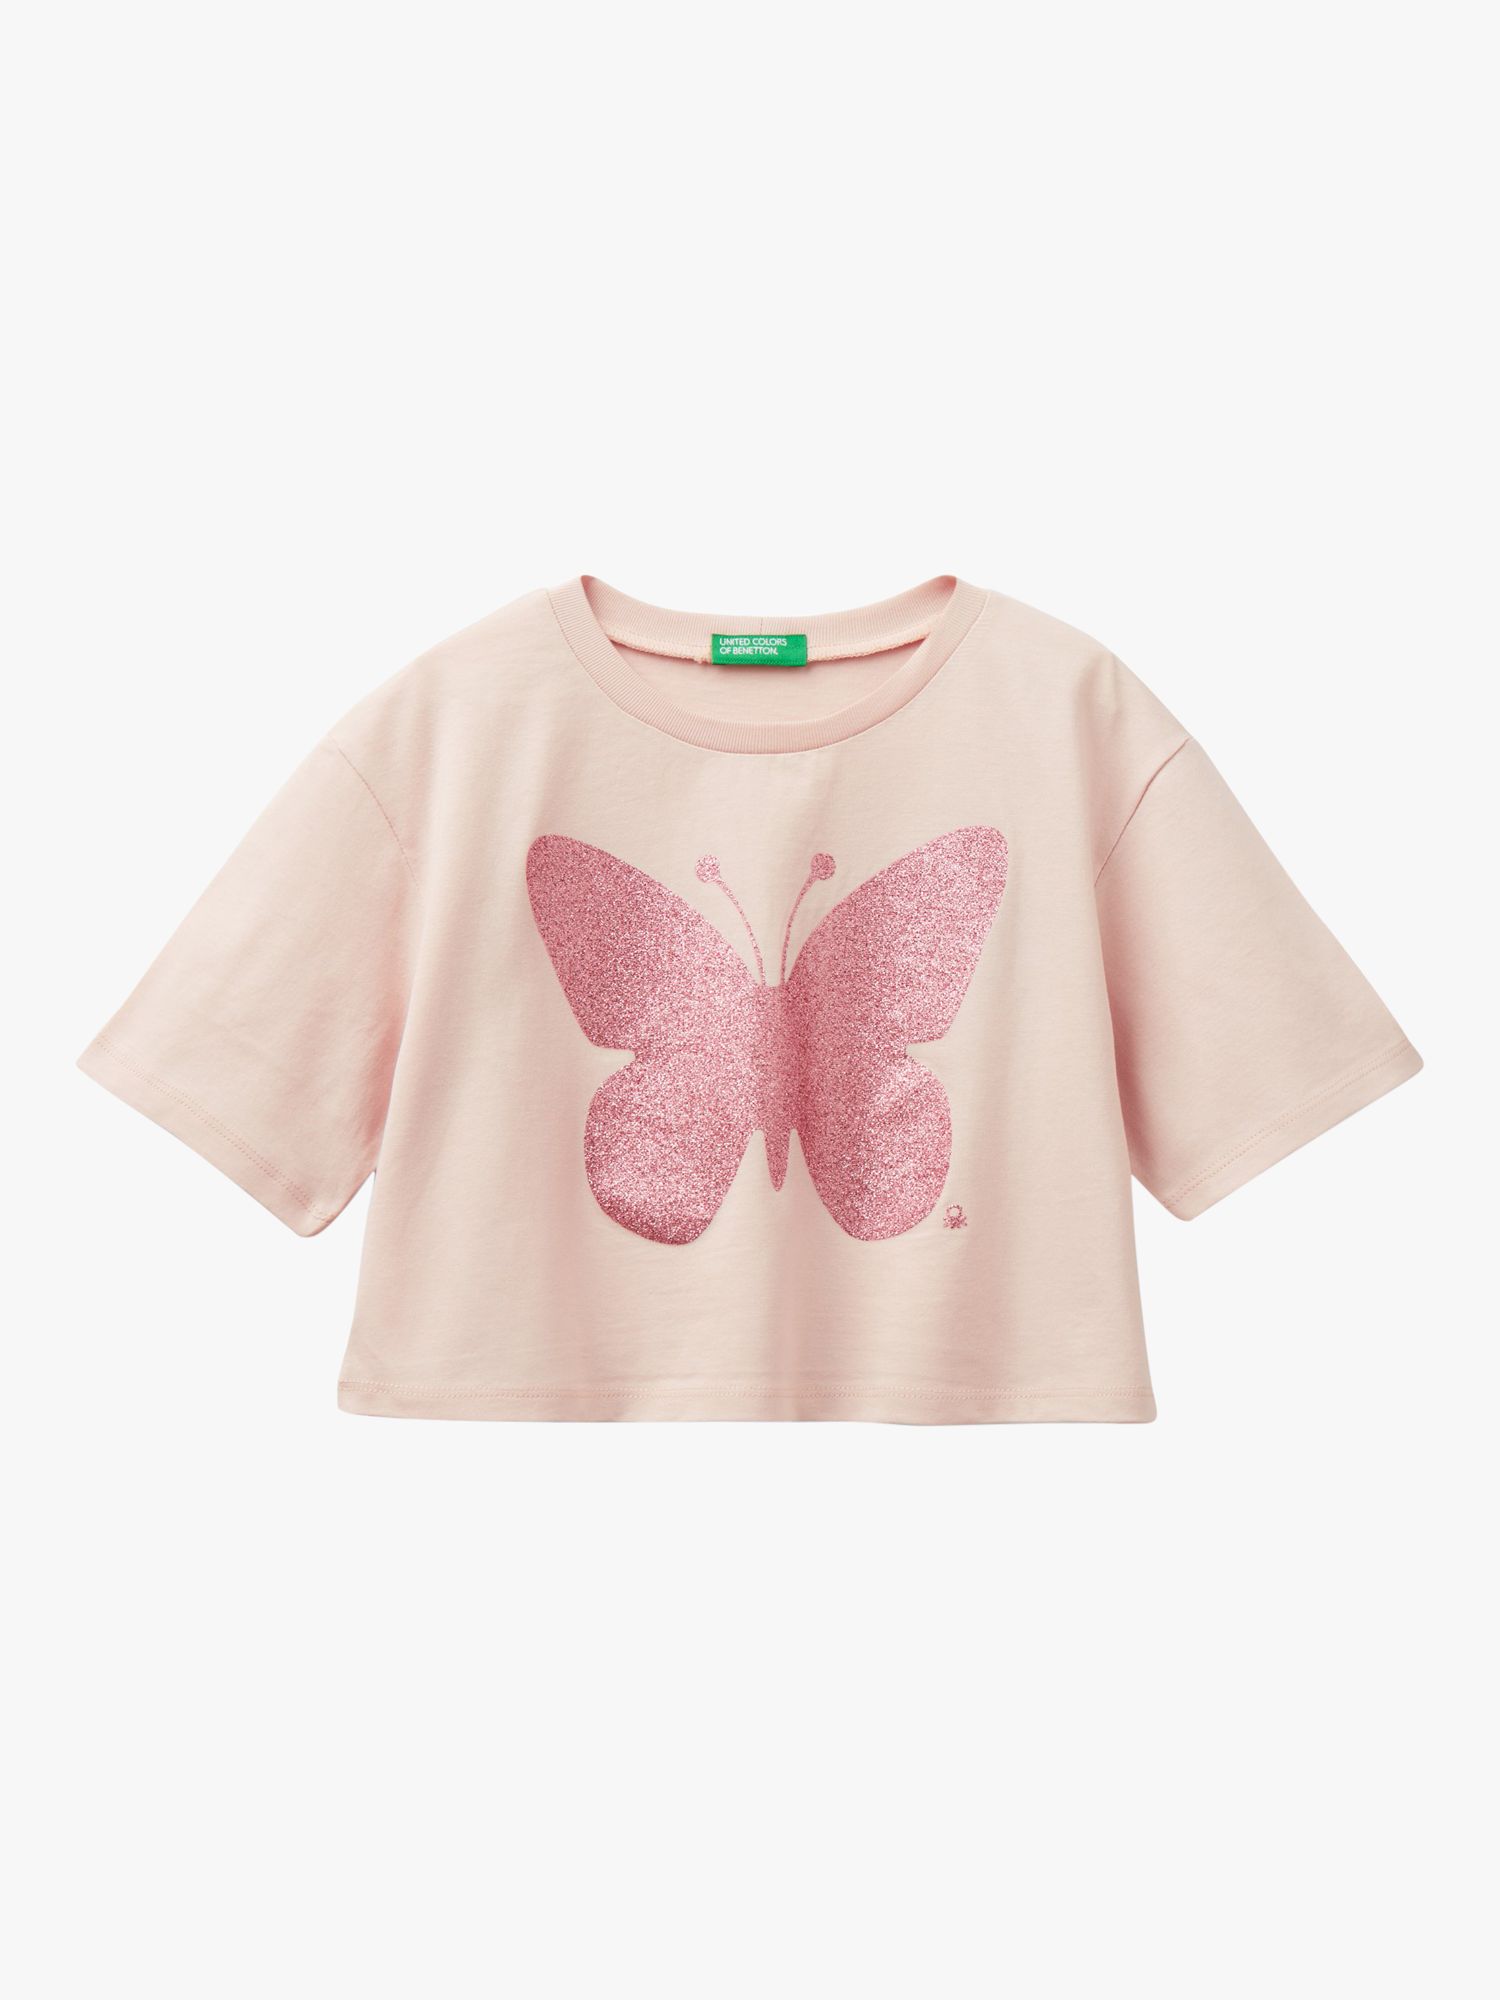 Benetton Kids' Glitter Butterfly T-Shirt, Sand, 6-7 years